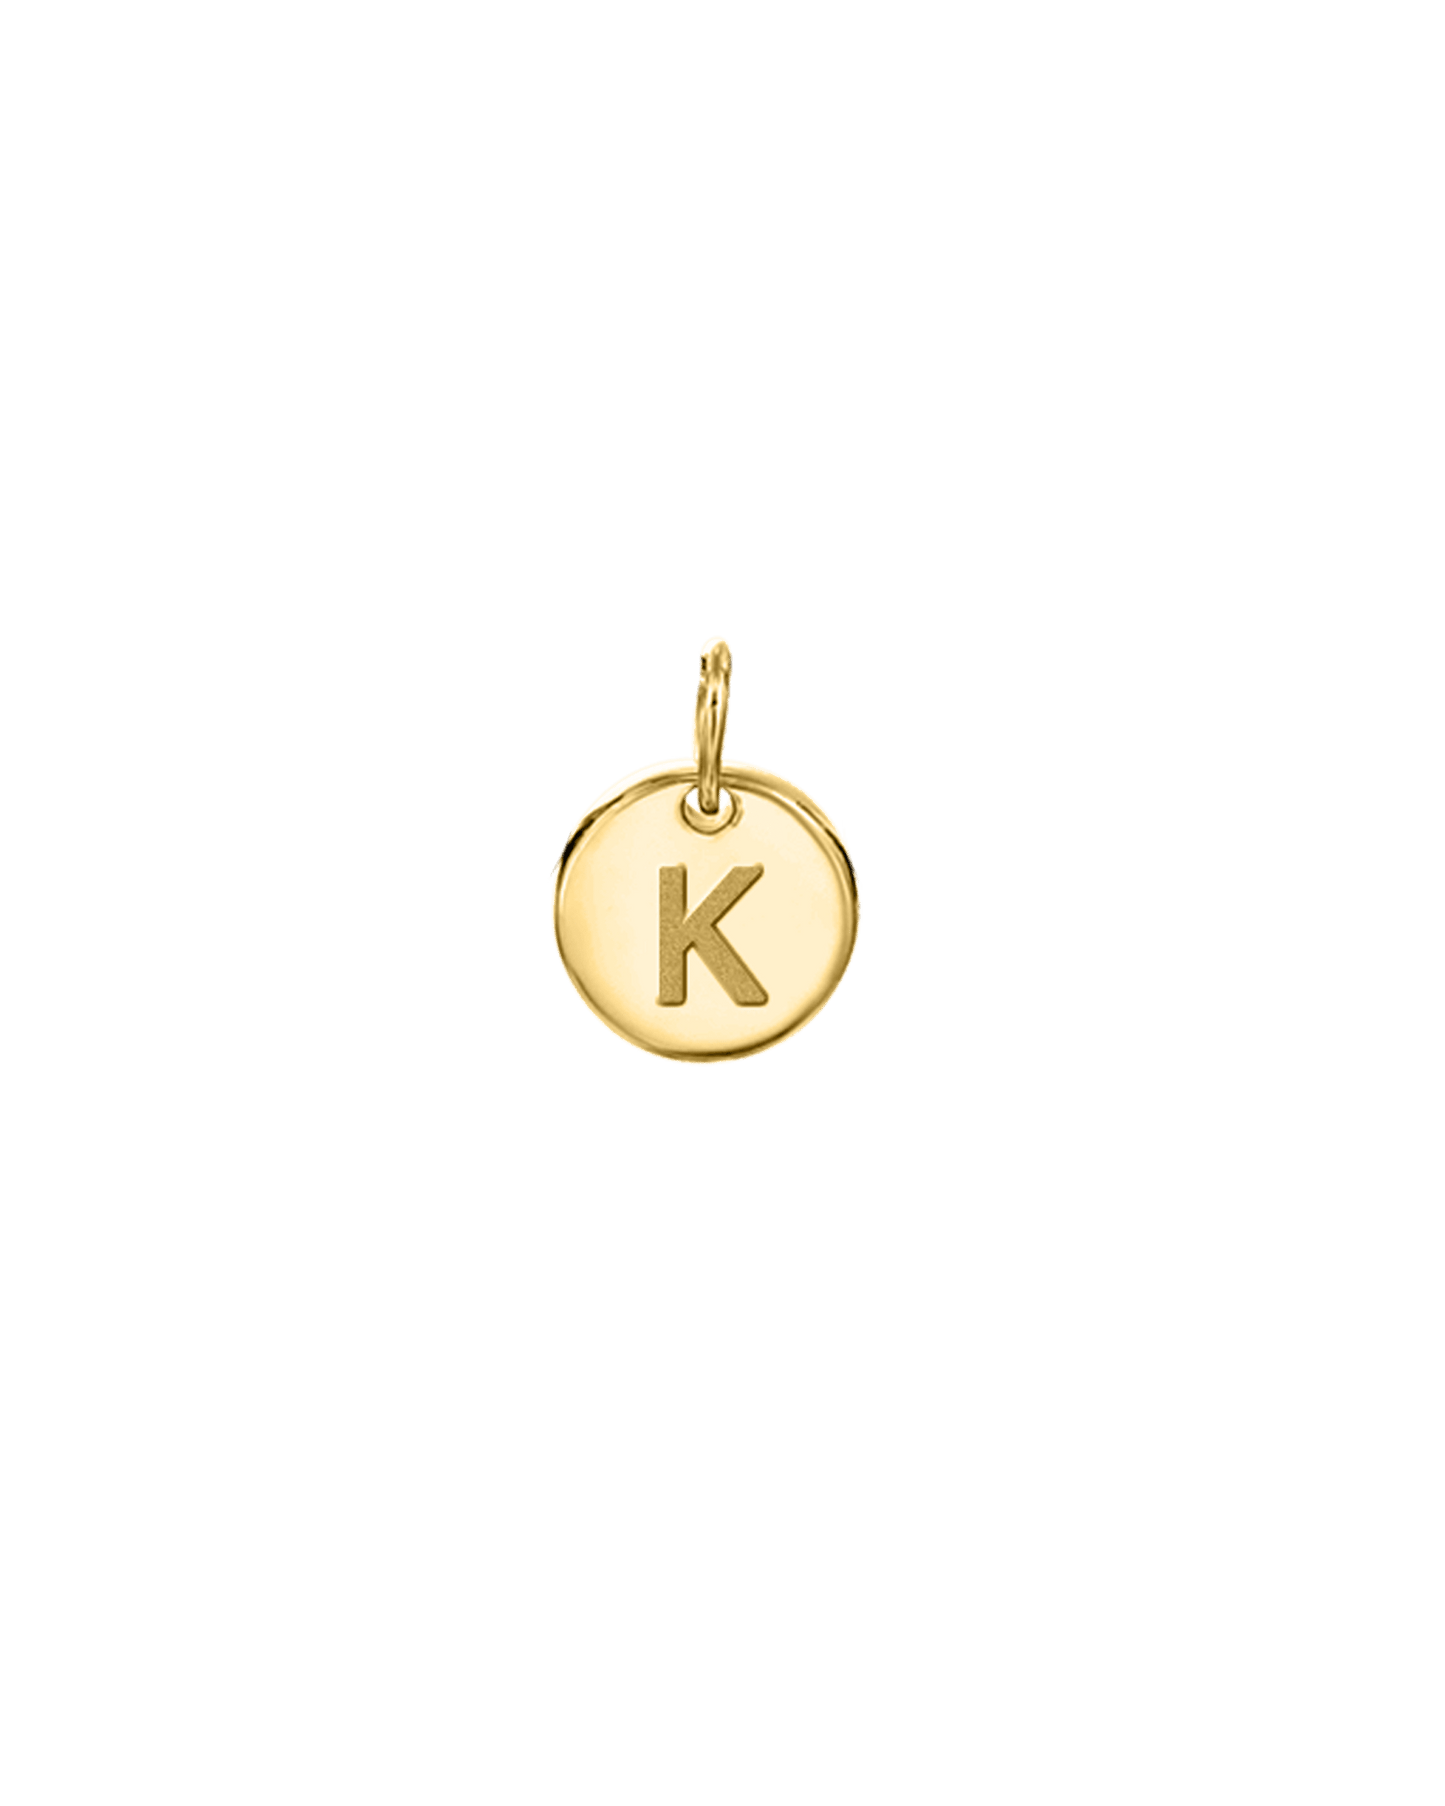 Tiny Initial Charm - 18K Gold Vermeil Charm magal-dev 